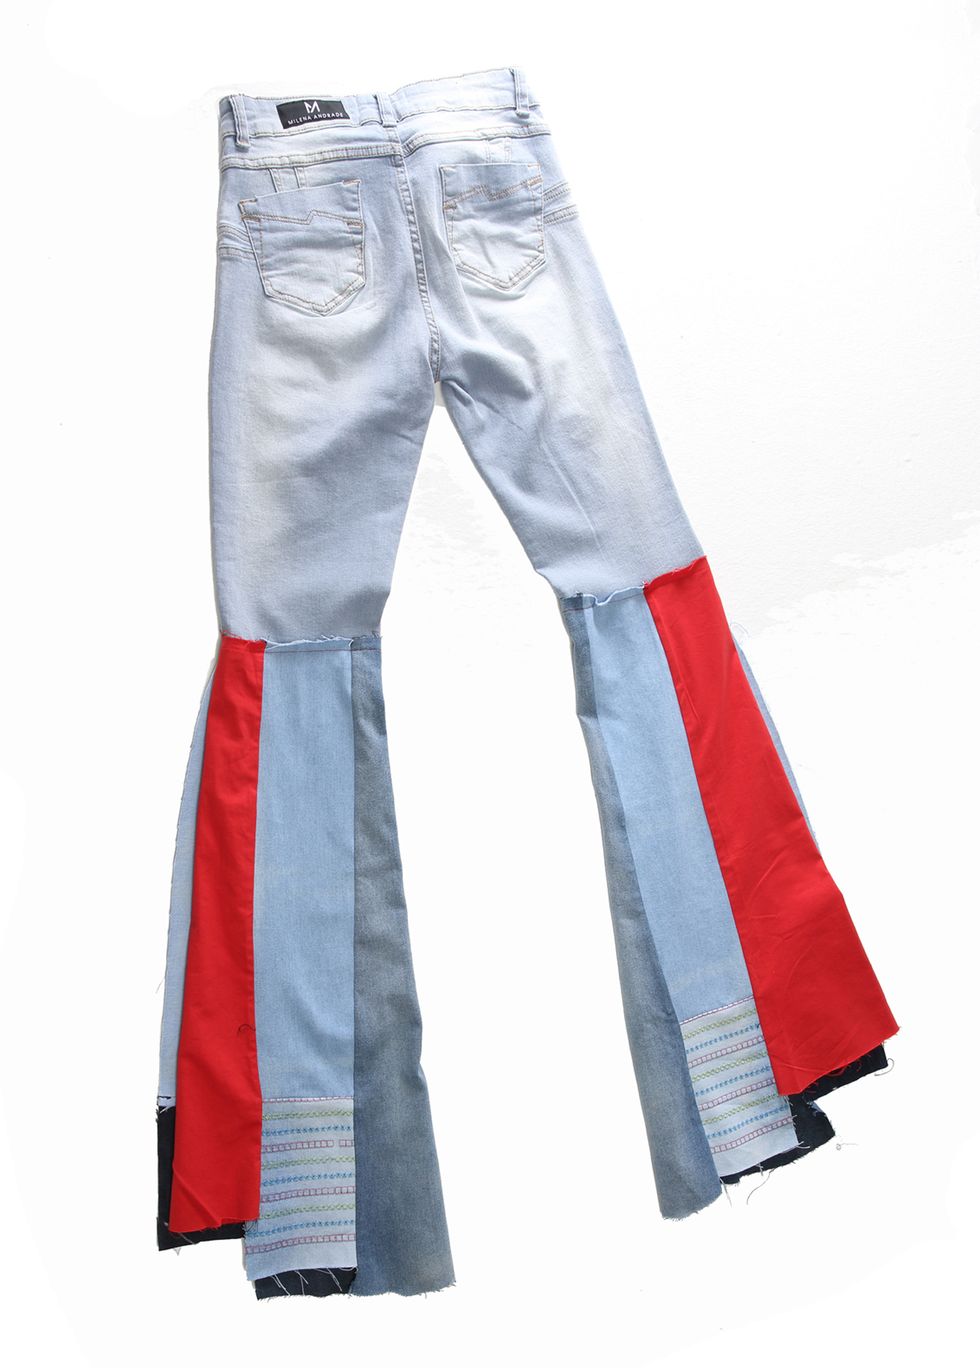 Il jeans che ti fa da push up al lato b ha un brevetto brasiliano per calzarti come un guanto e regalarti un lift ai glutei senza precedenti, Milena Andrade, la designer offre la possibilità di un servizio su misura.